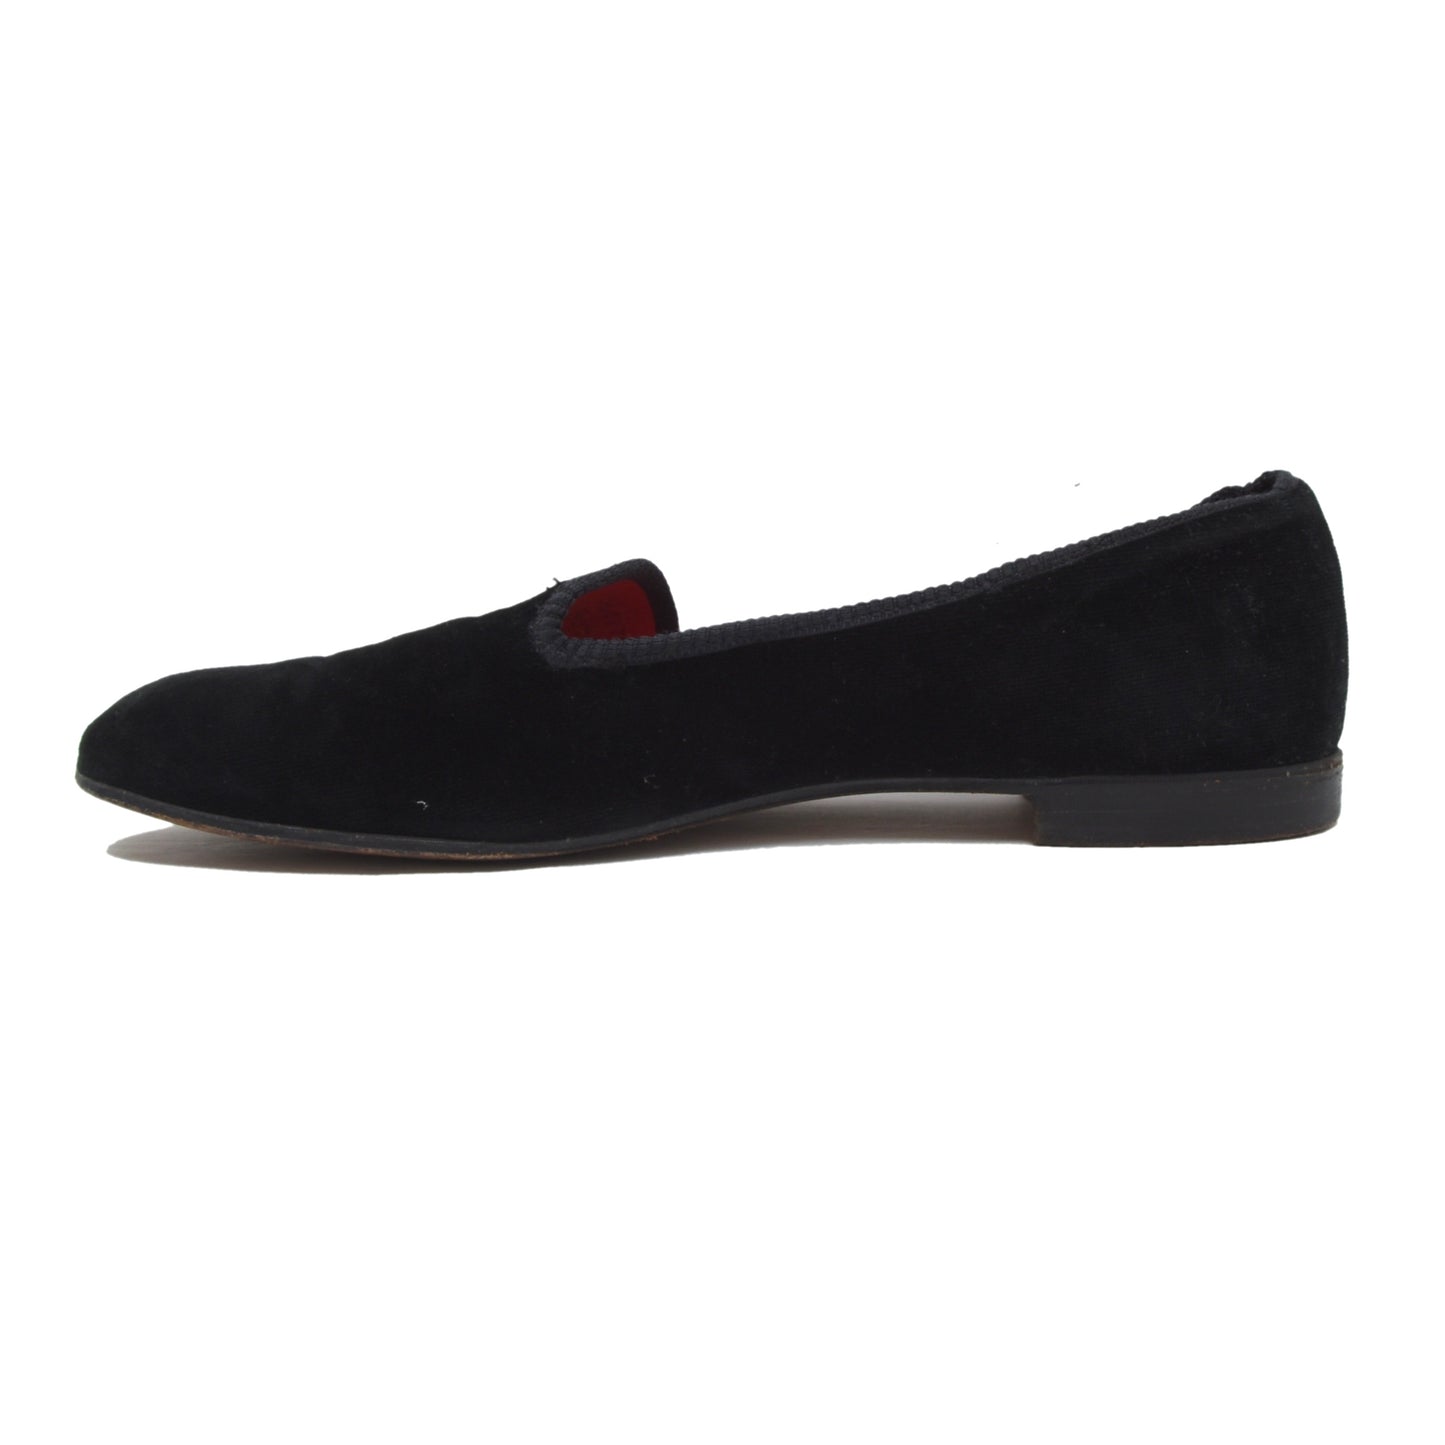 Tricker's Velvet Slippers/Shoes Size 9.5 - Black